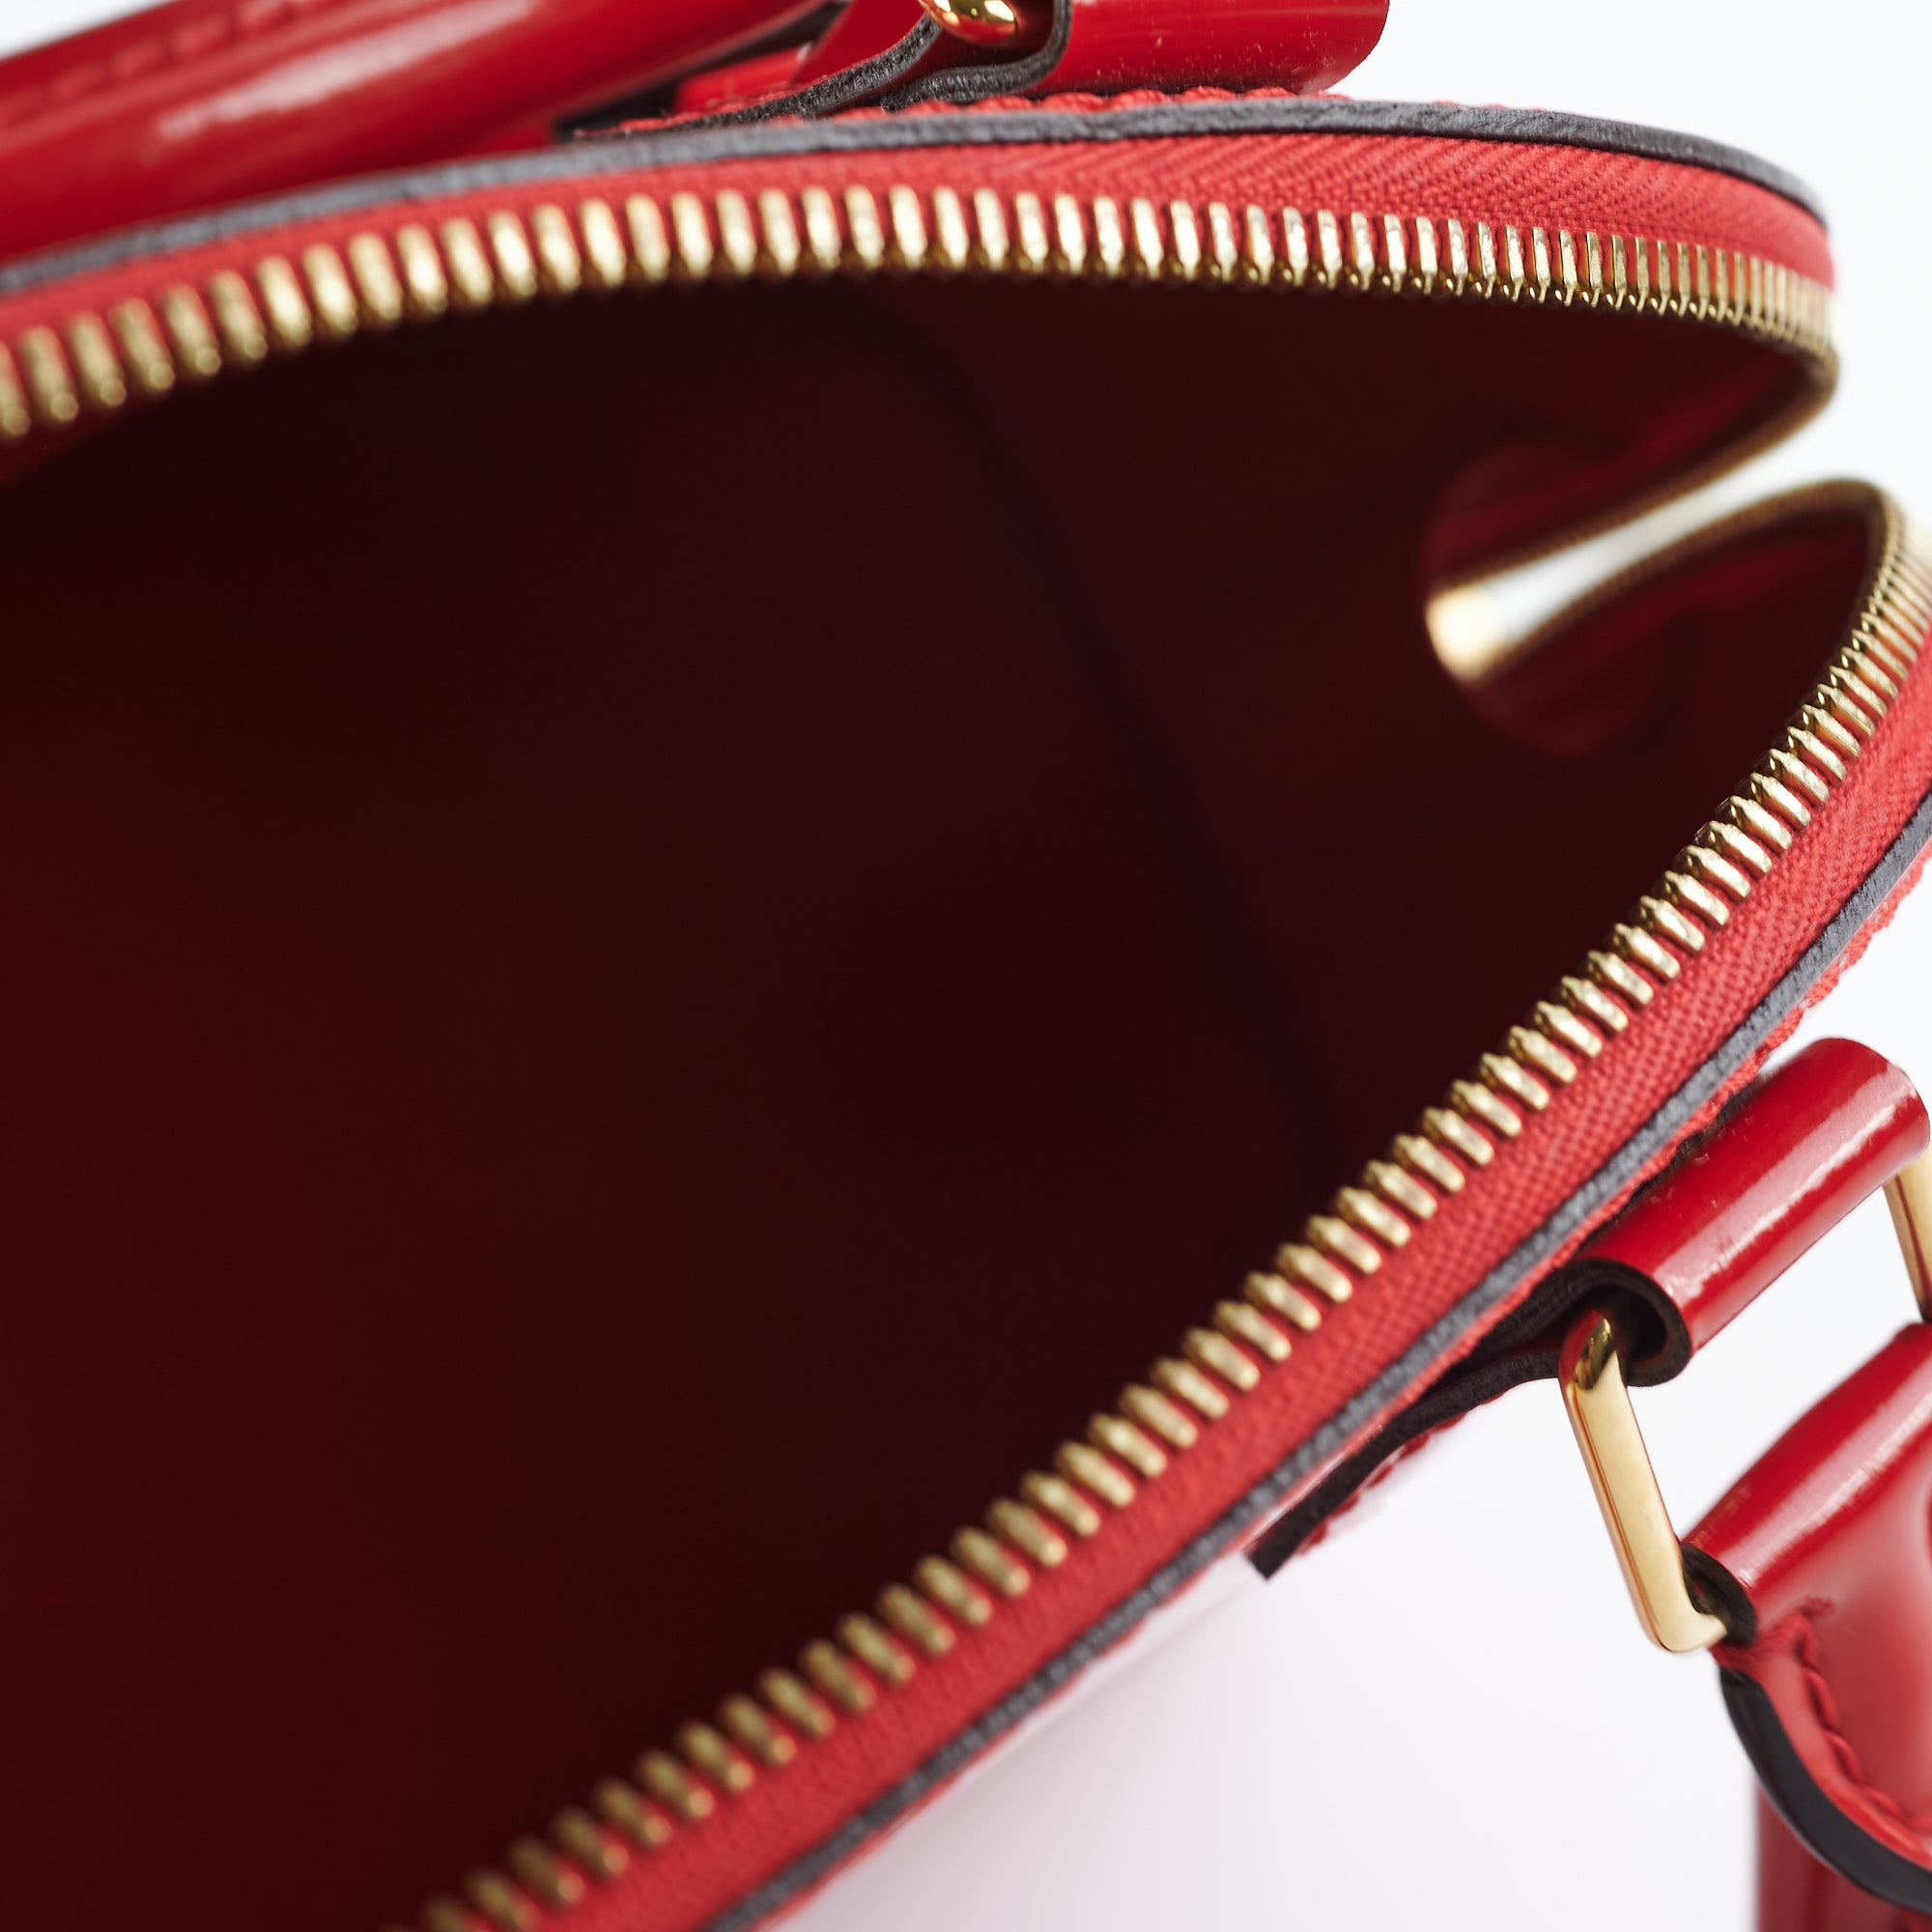 Louis Vuitton Alma Bb Patent Red Bag - THE PURSE AFFAIR